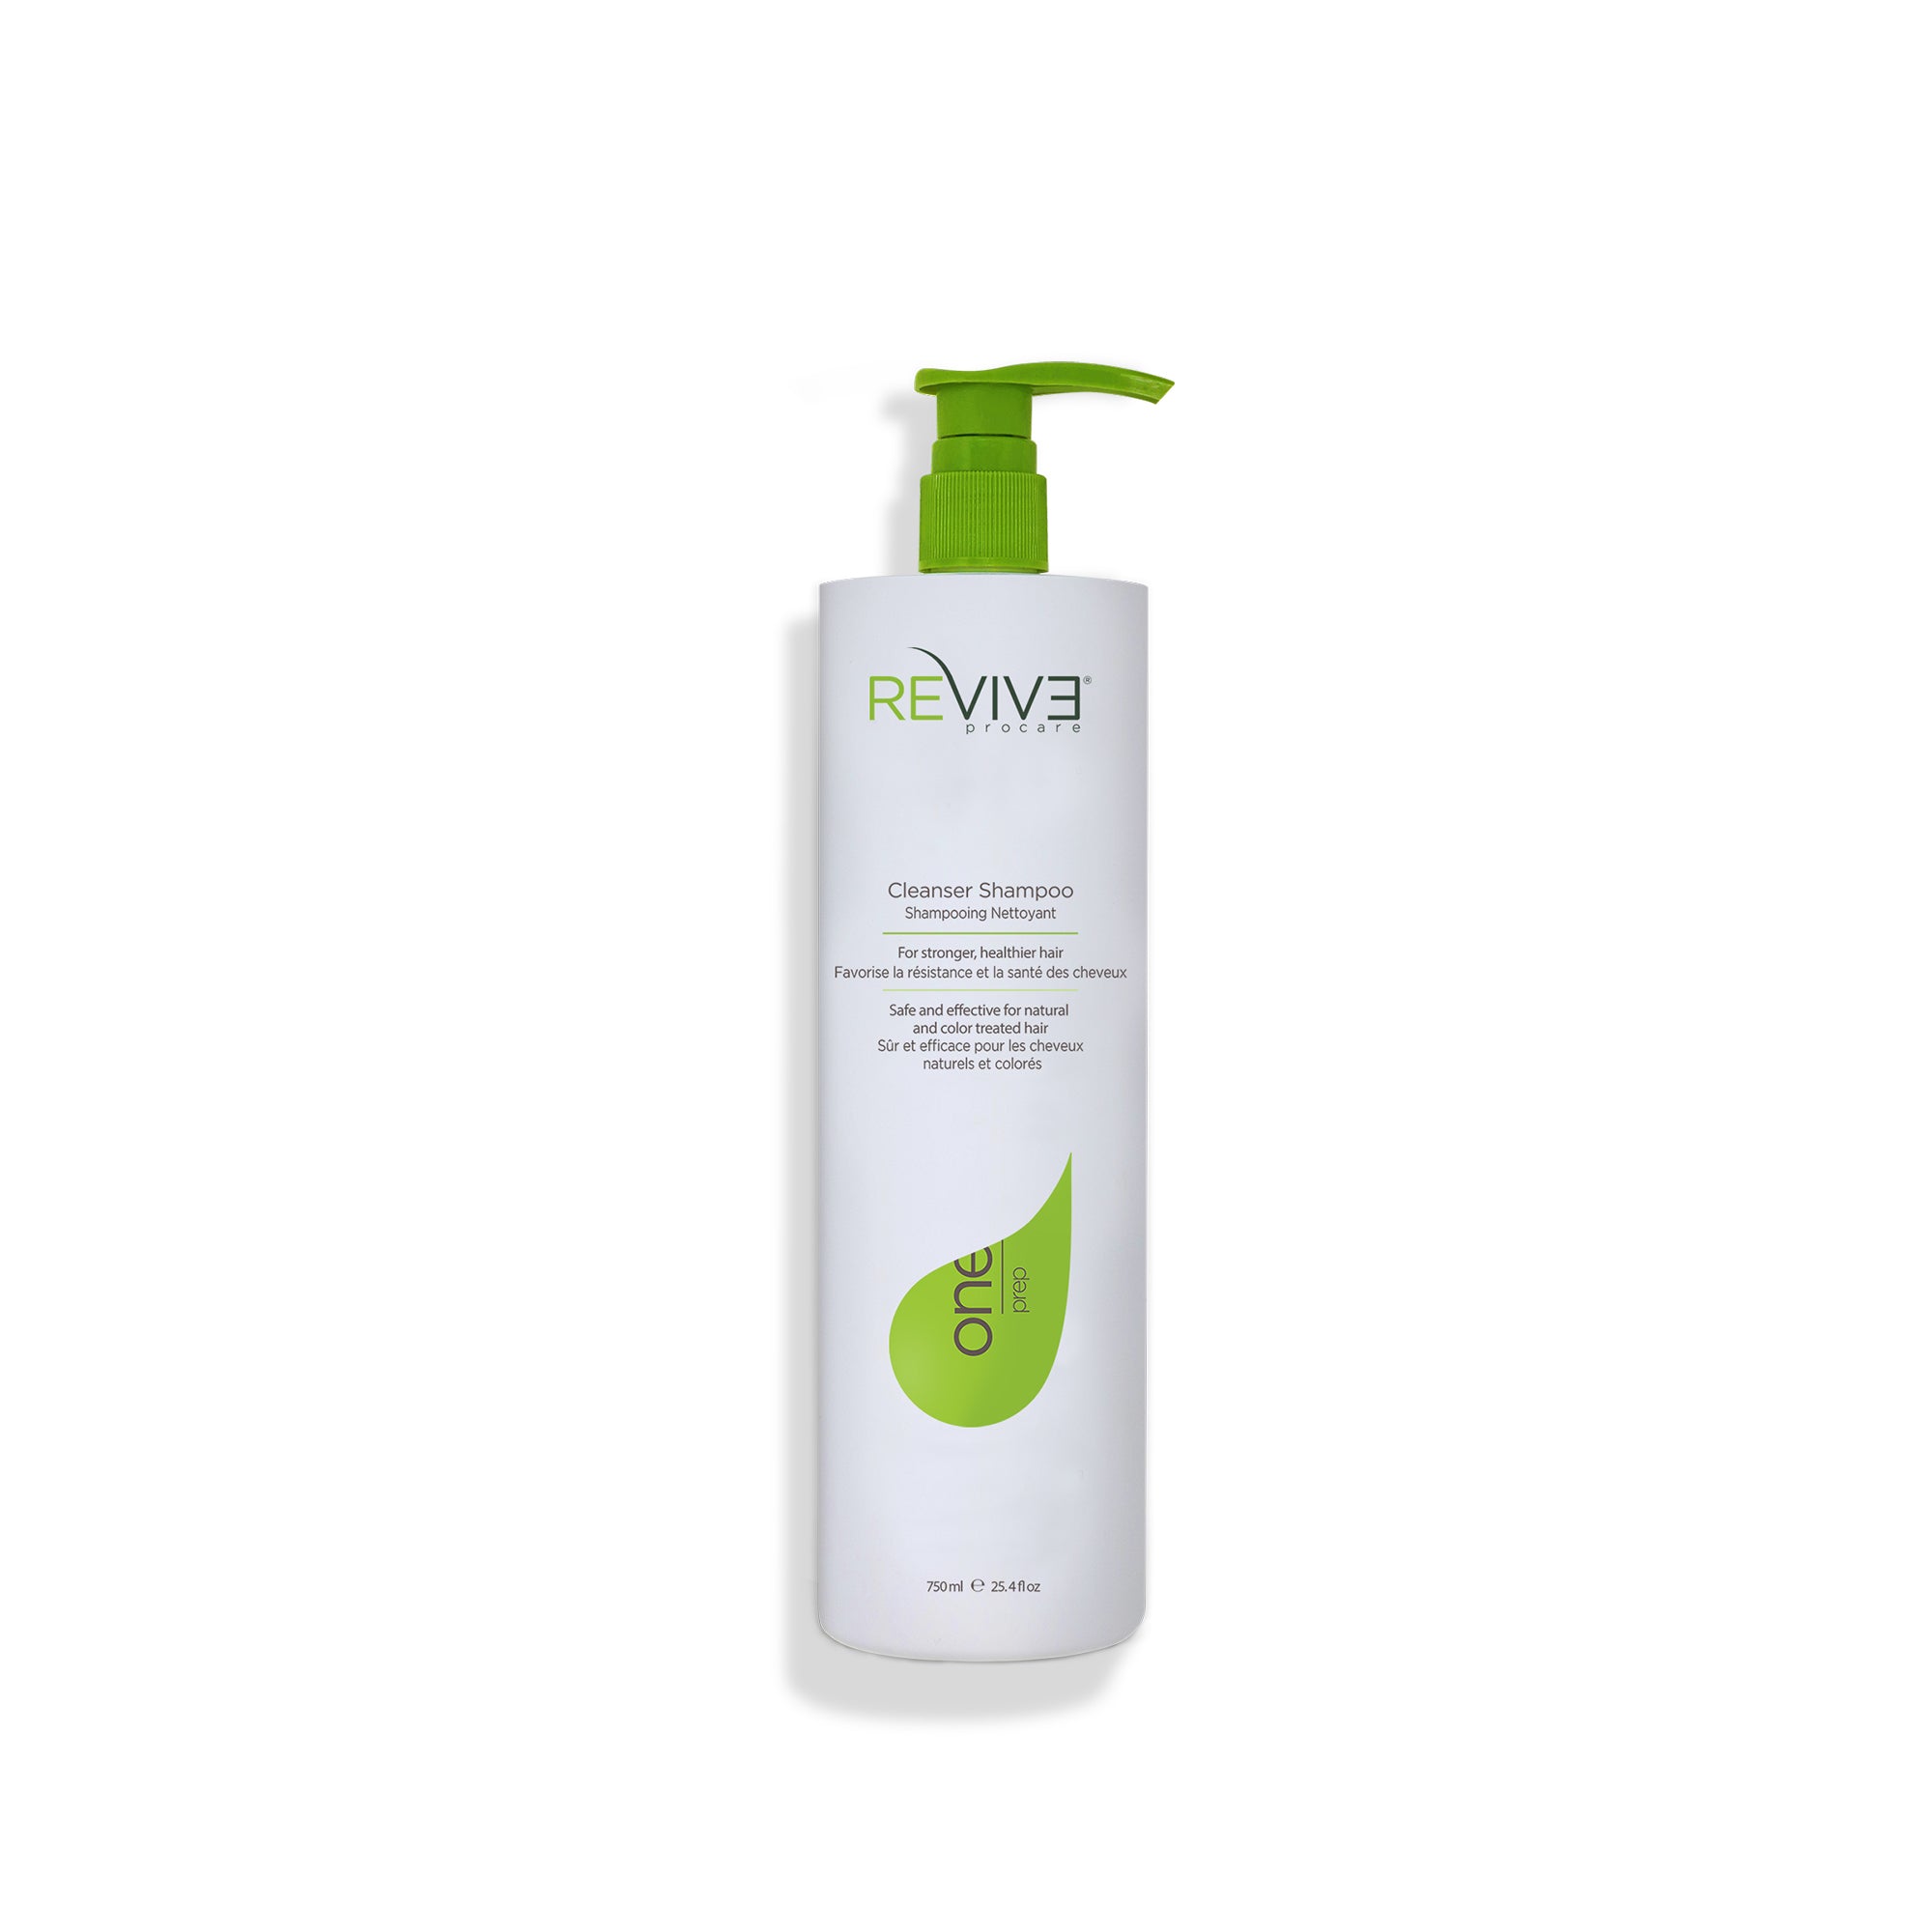 PREP Cleanser Shampoo - 25.4 – Reviv3 Procare oz